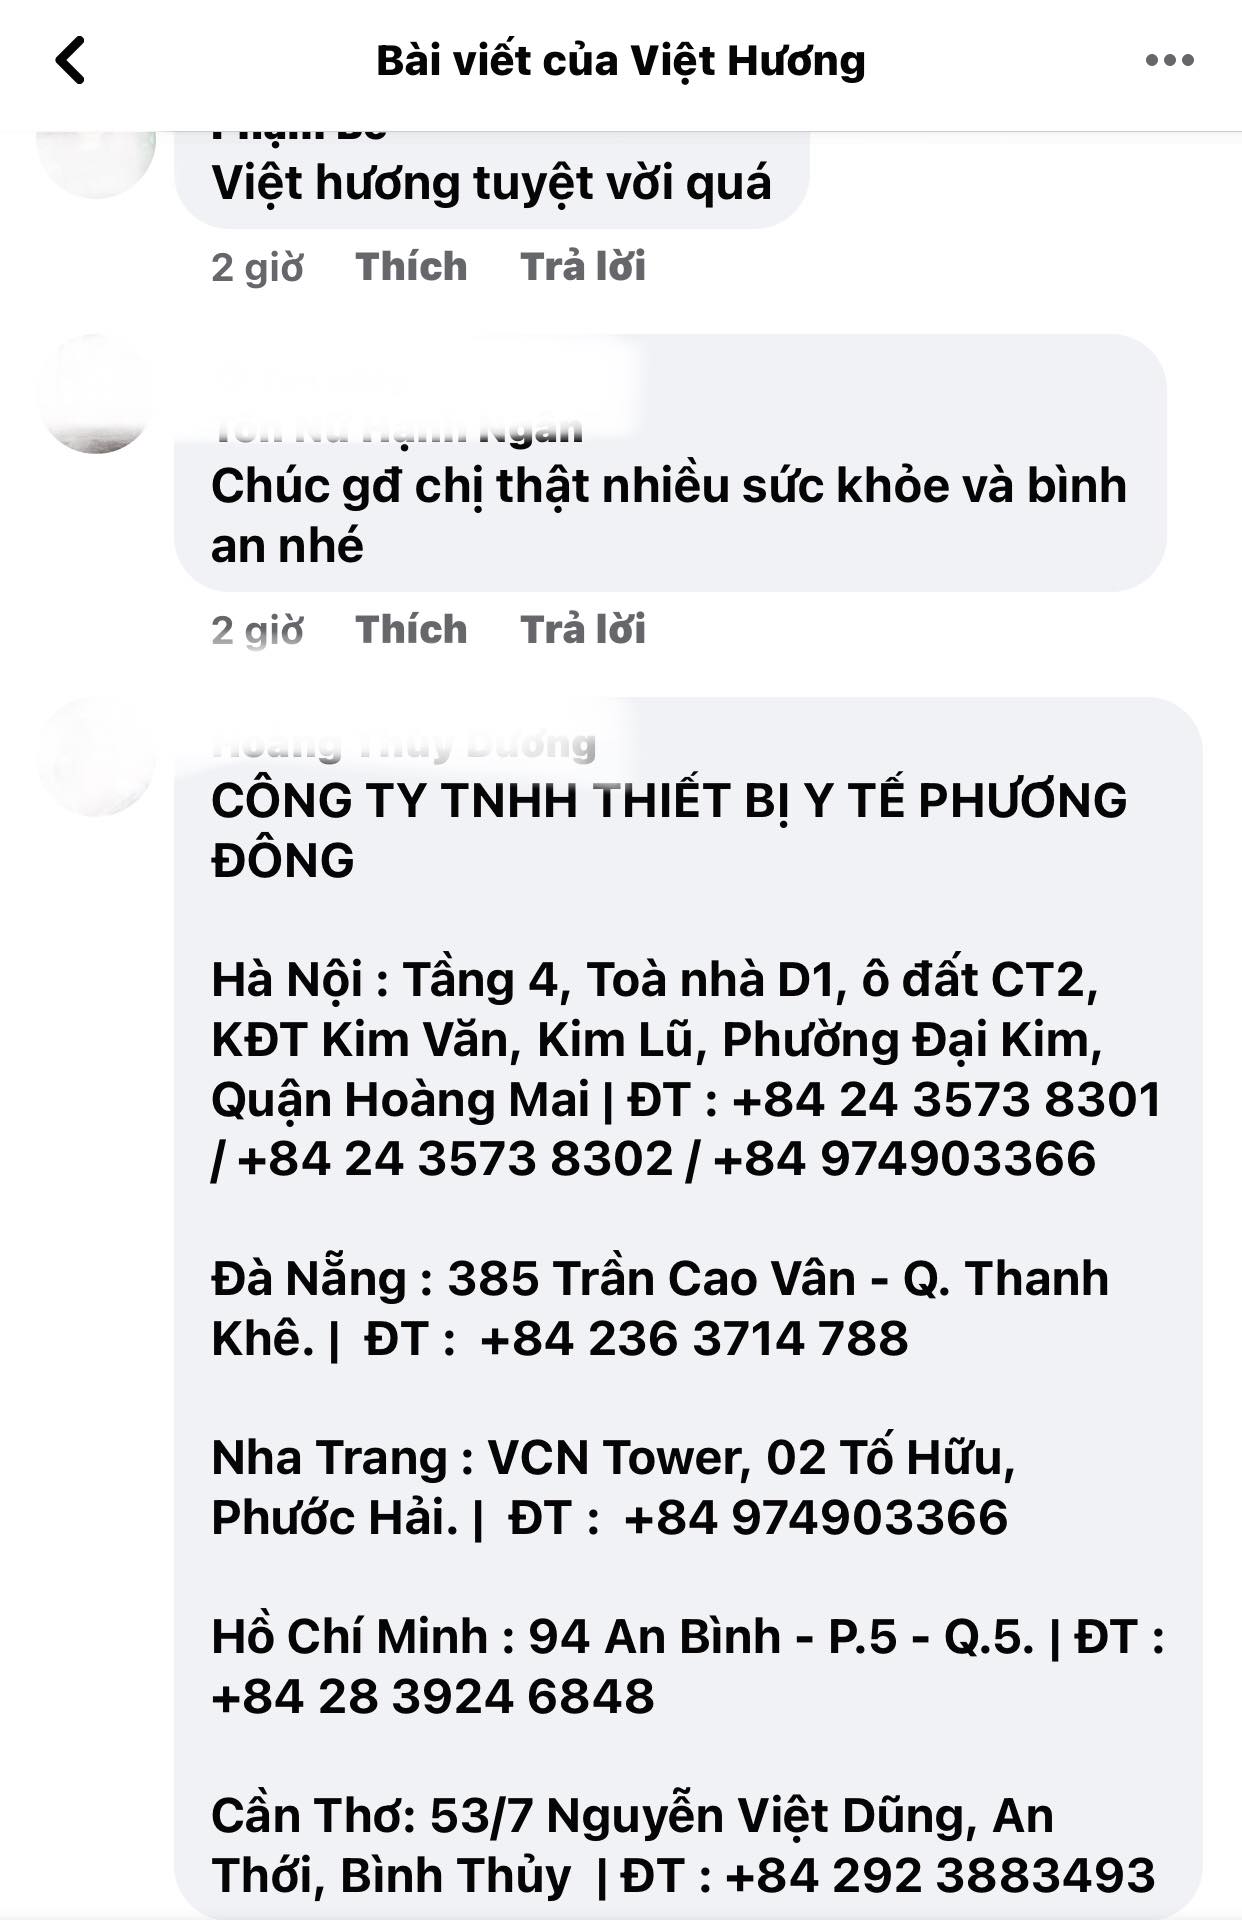 Viet-huong-dang-dan-khan-thiet-xin-su-goup-do-tu-cdm-vi-dang-trai-qua-tinh-huong-qua-cap-bach-3